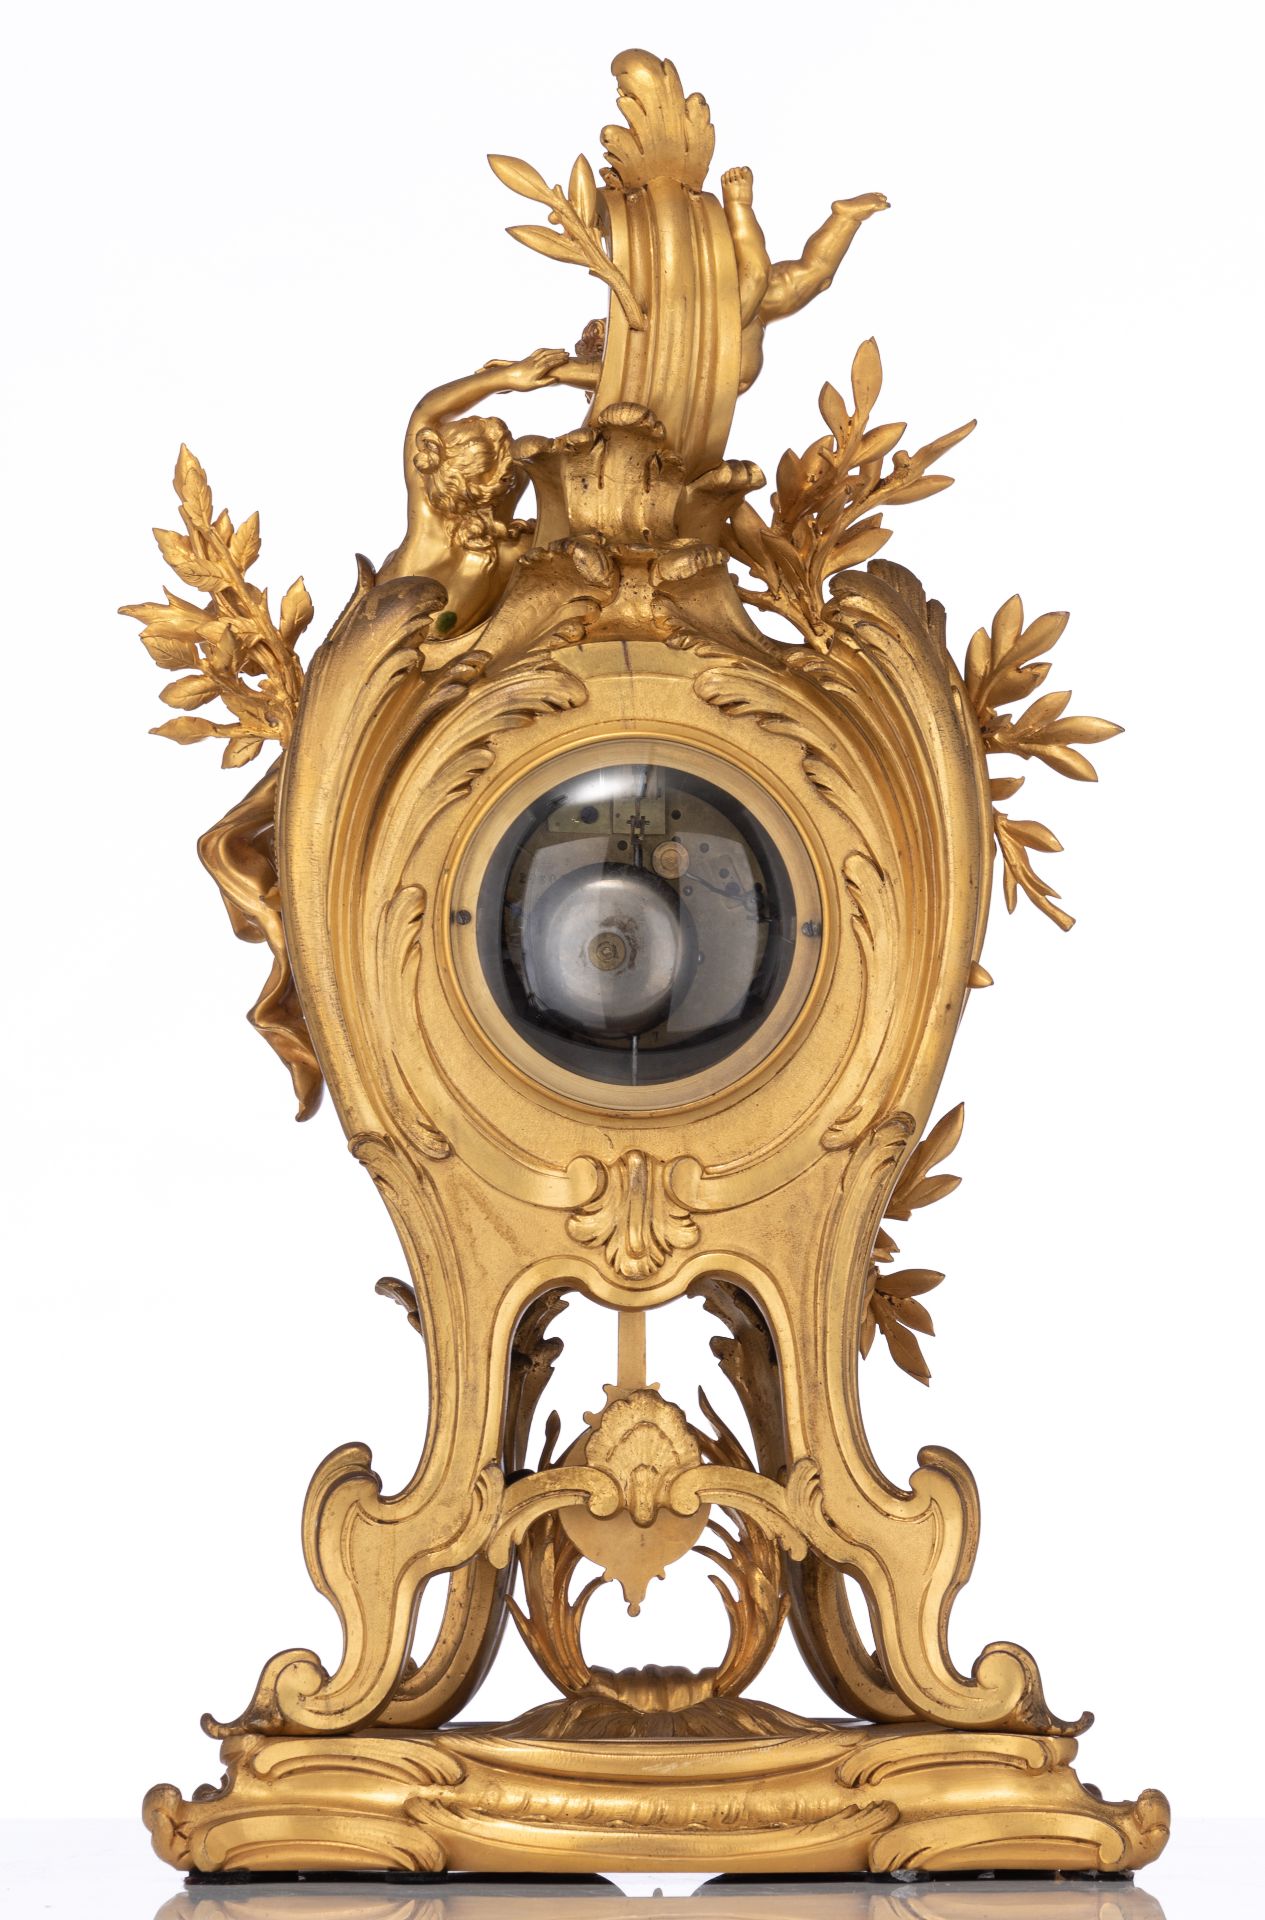 A fine Rococo style gilt bronze cartel clock, H 61 cm - Image 3 of 10